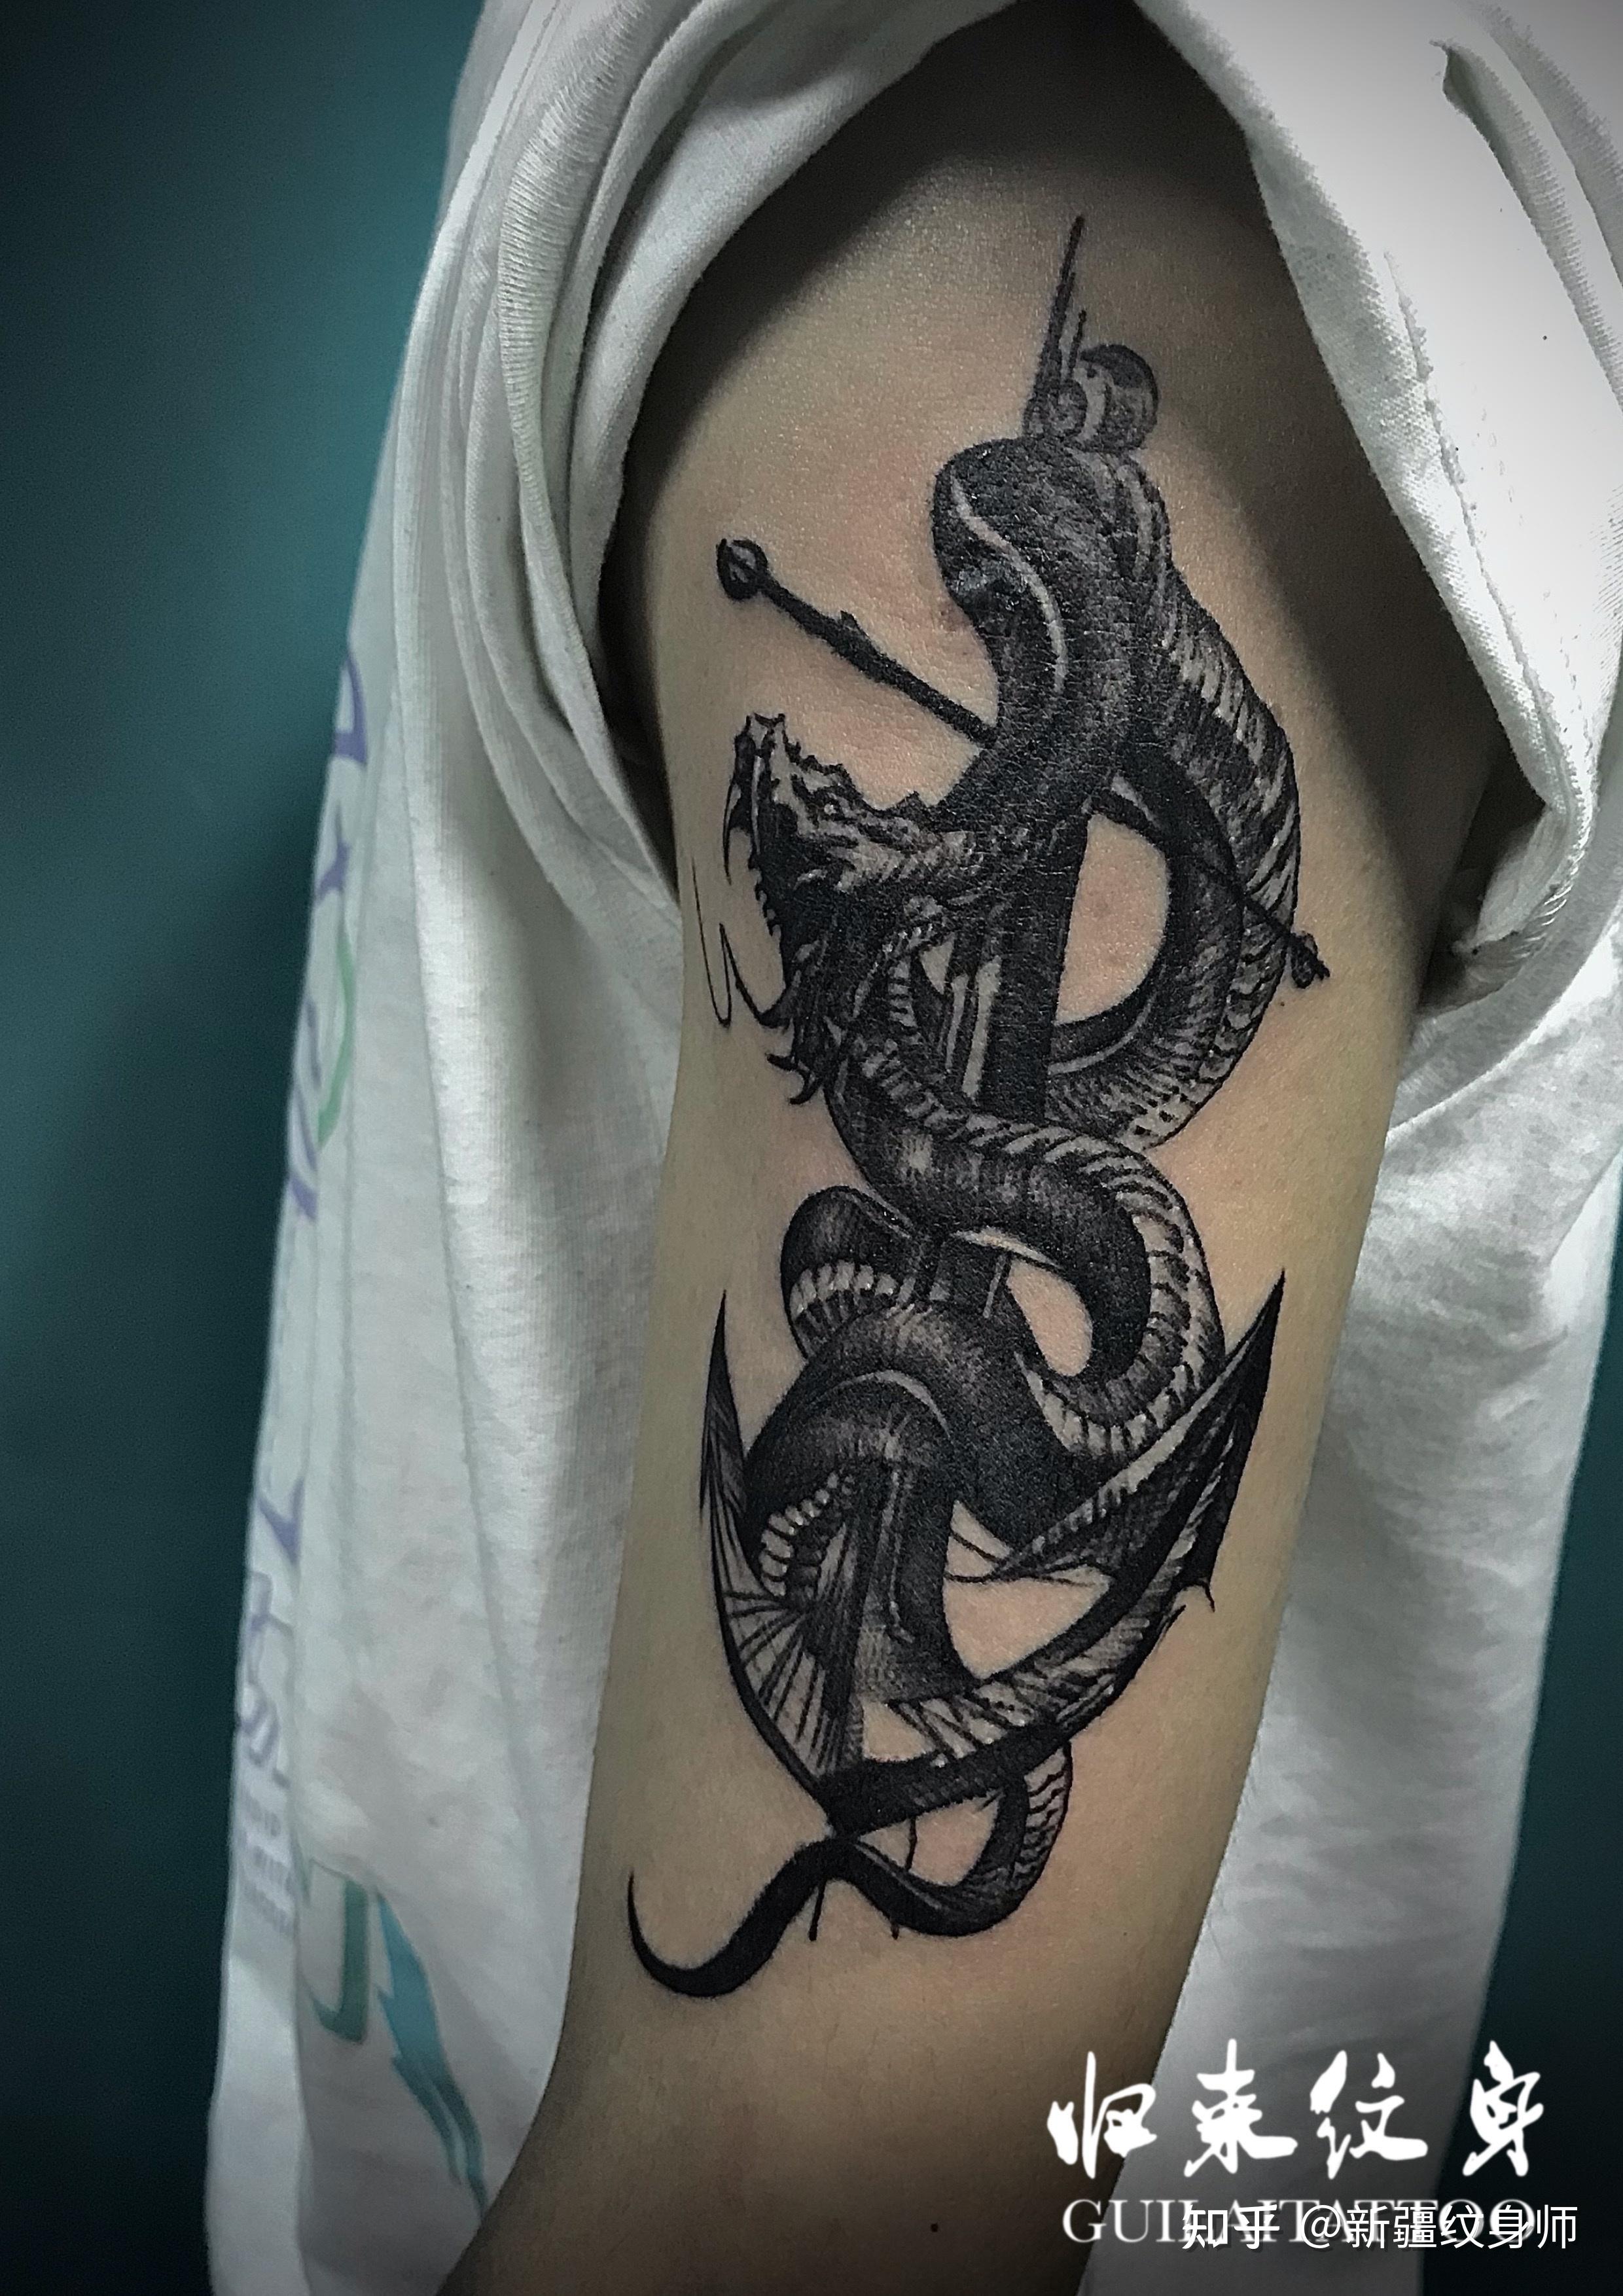 今日纹身作品一一大蟒蛇